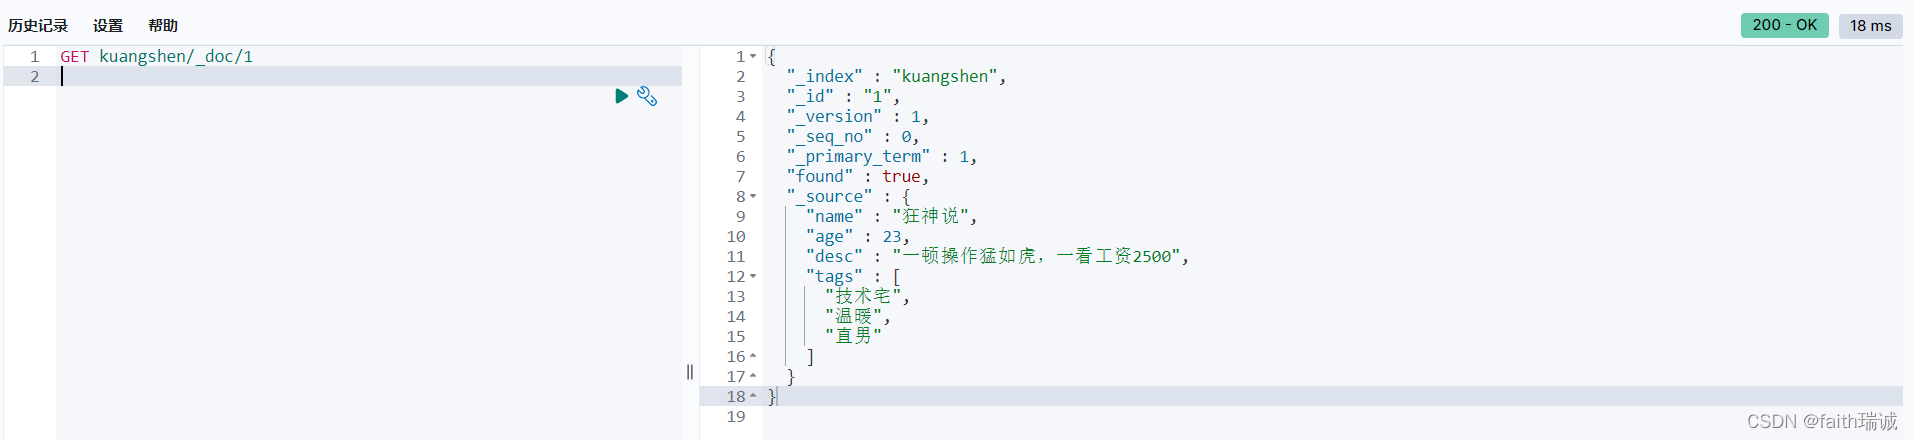 kuangshen索引中文档ID为1的文档内容